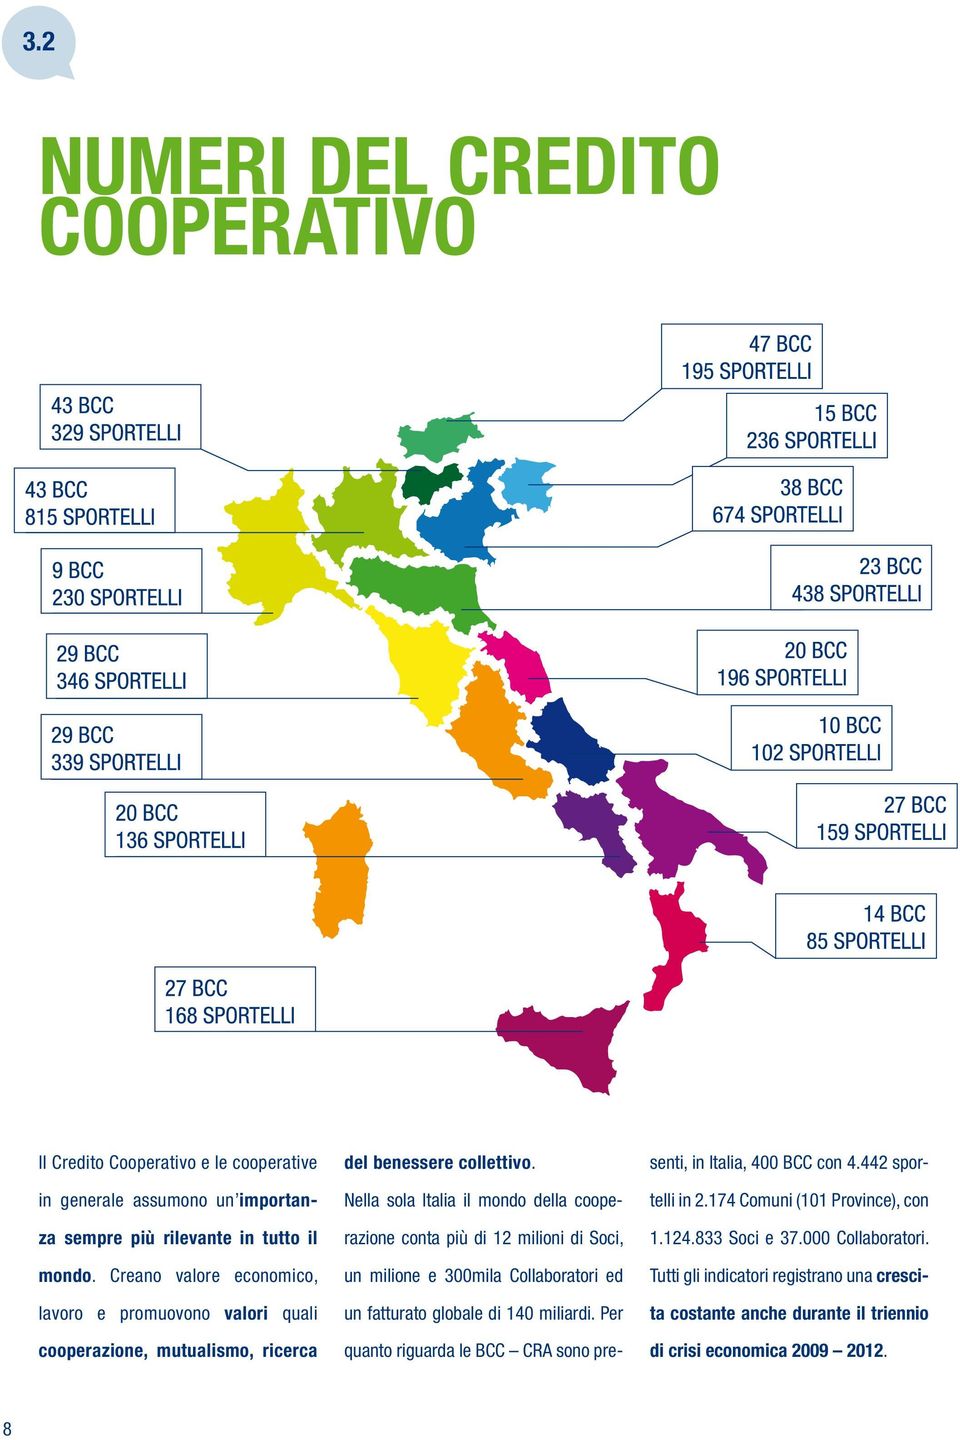 Nella sola Italia il mondo della cooperazione conta più di 12 milioni di Soci, un milione e 300mila Collaboratori ed un fatturato globale di 140 miliardi.